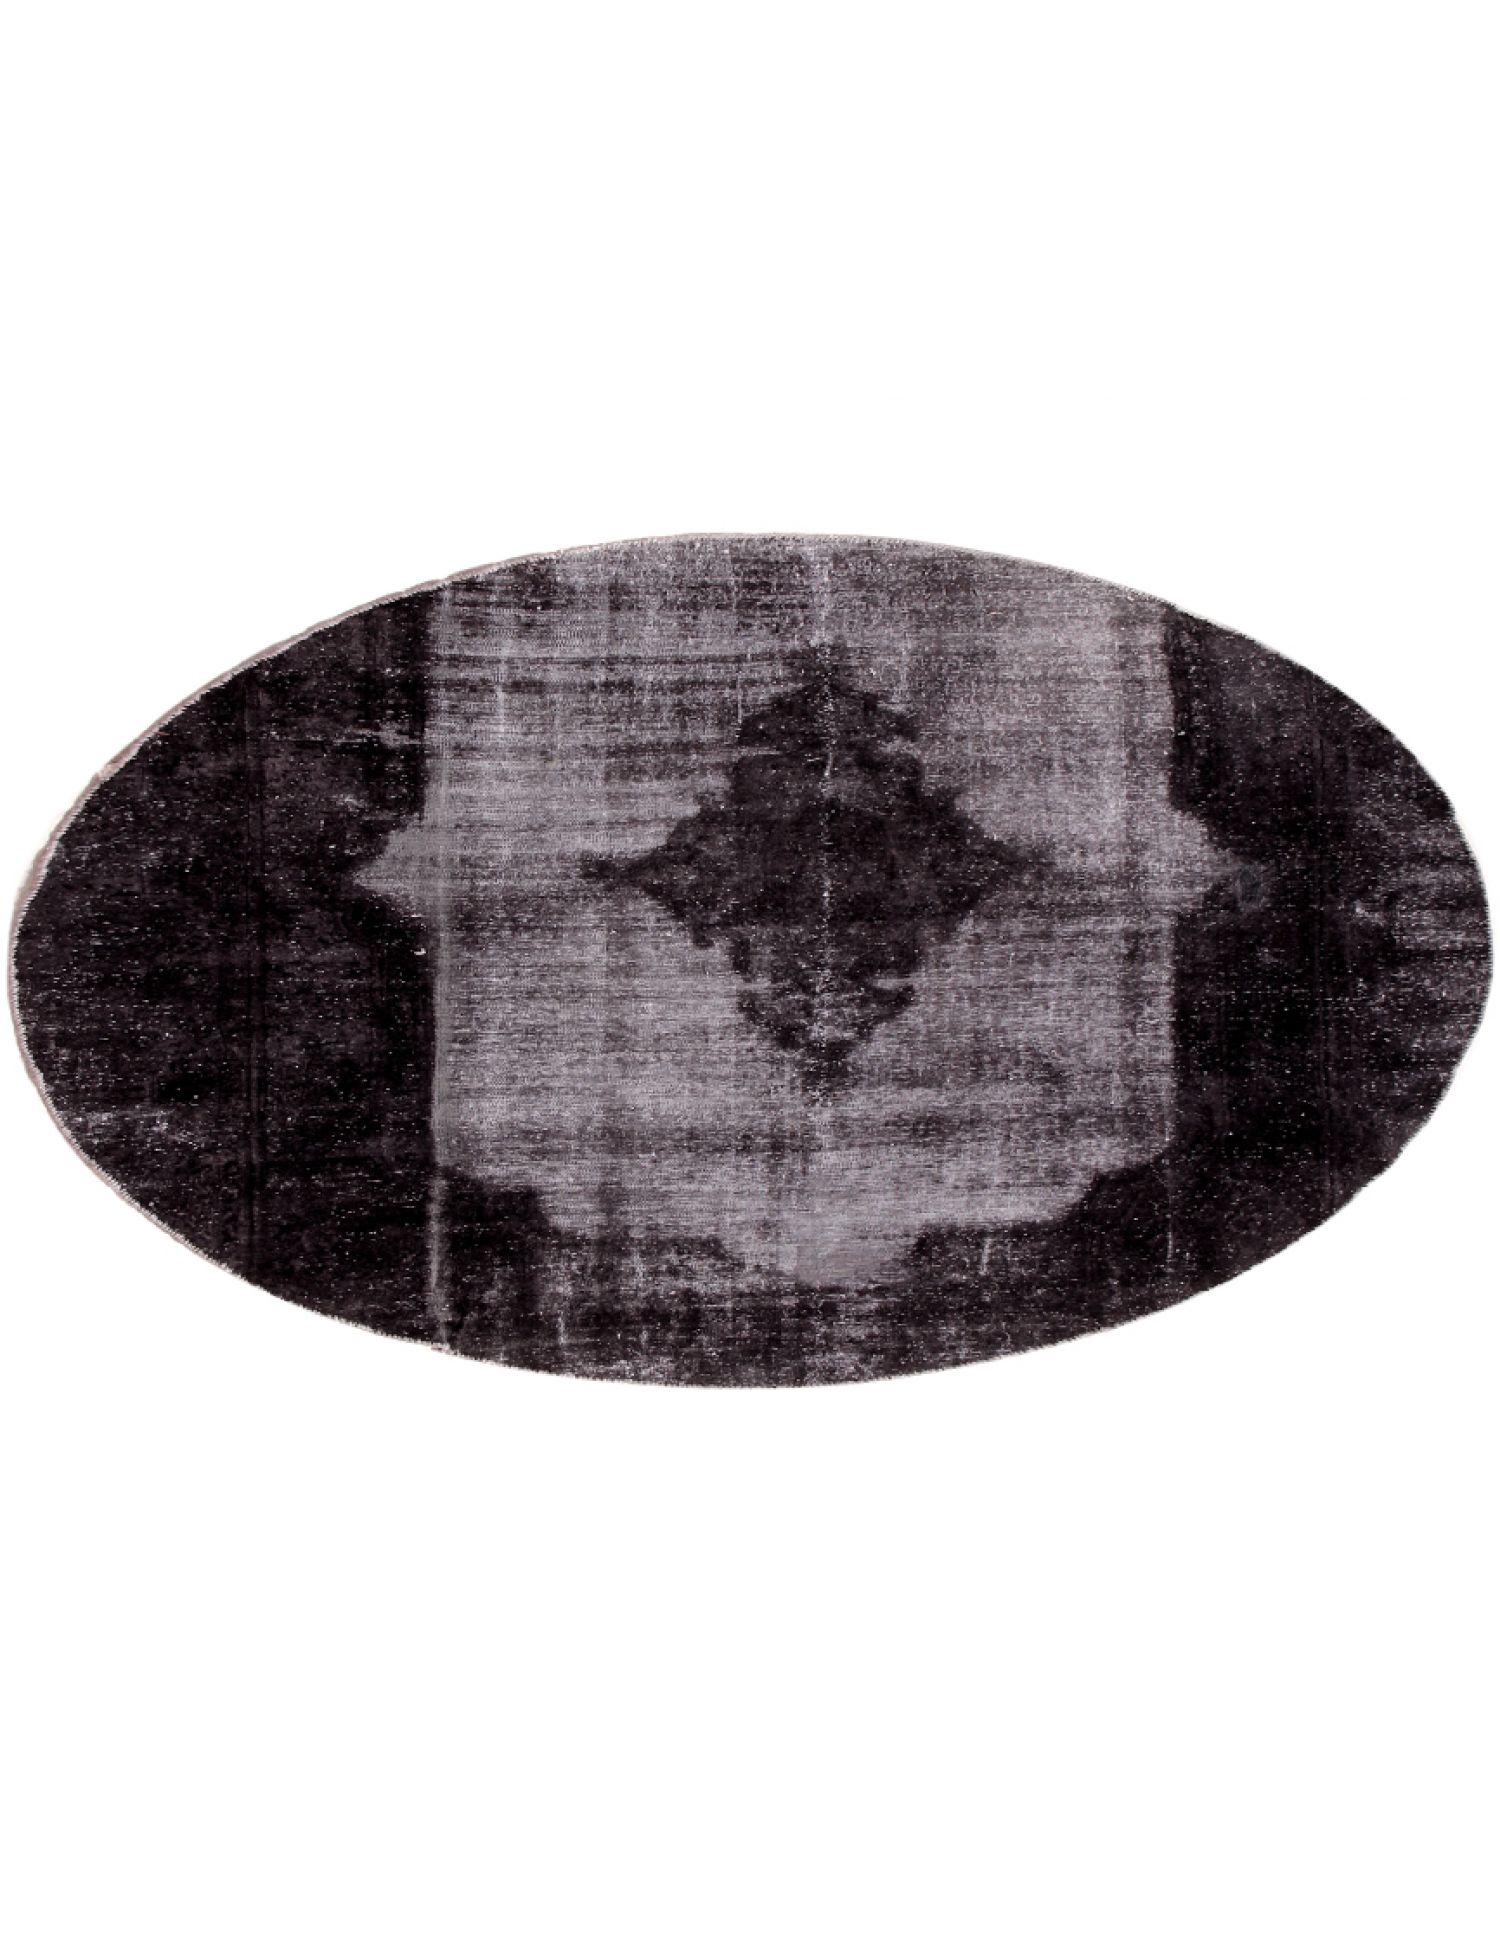 Persisk Vintagetæppe  sort <br/>206 x 206 cm